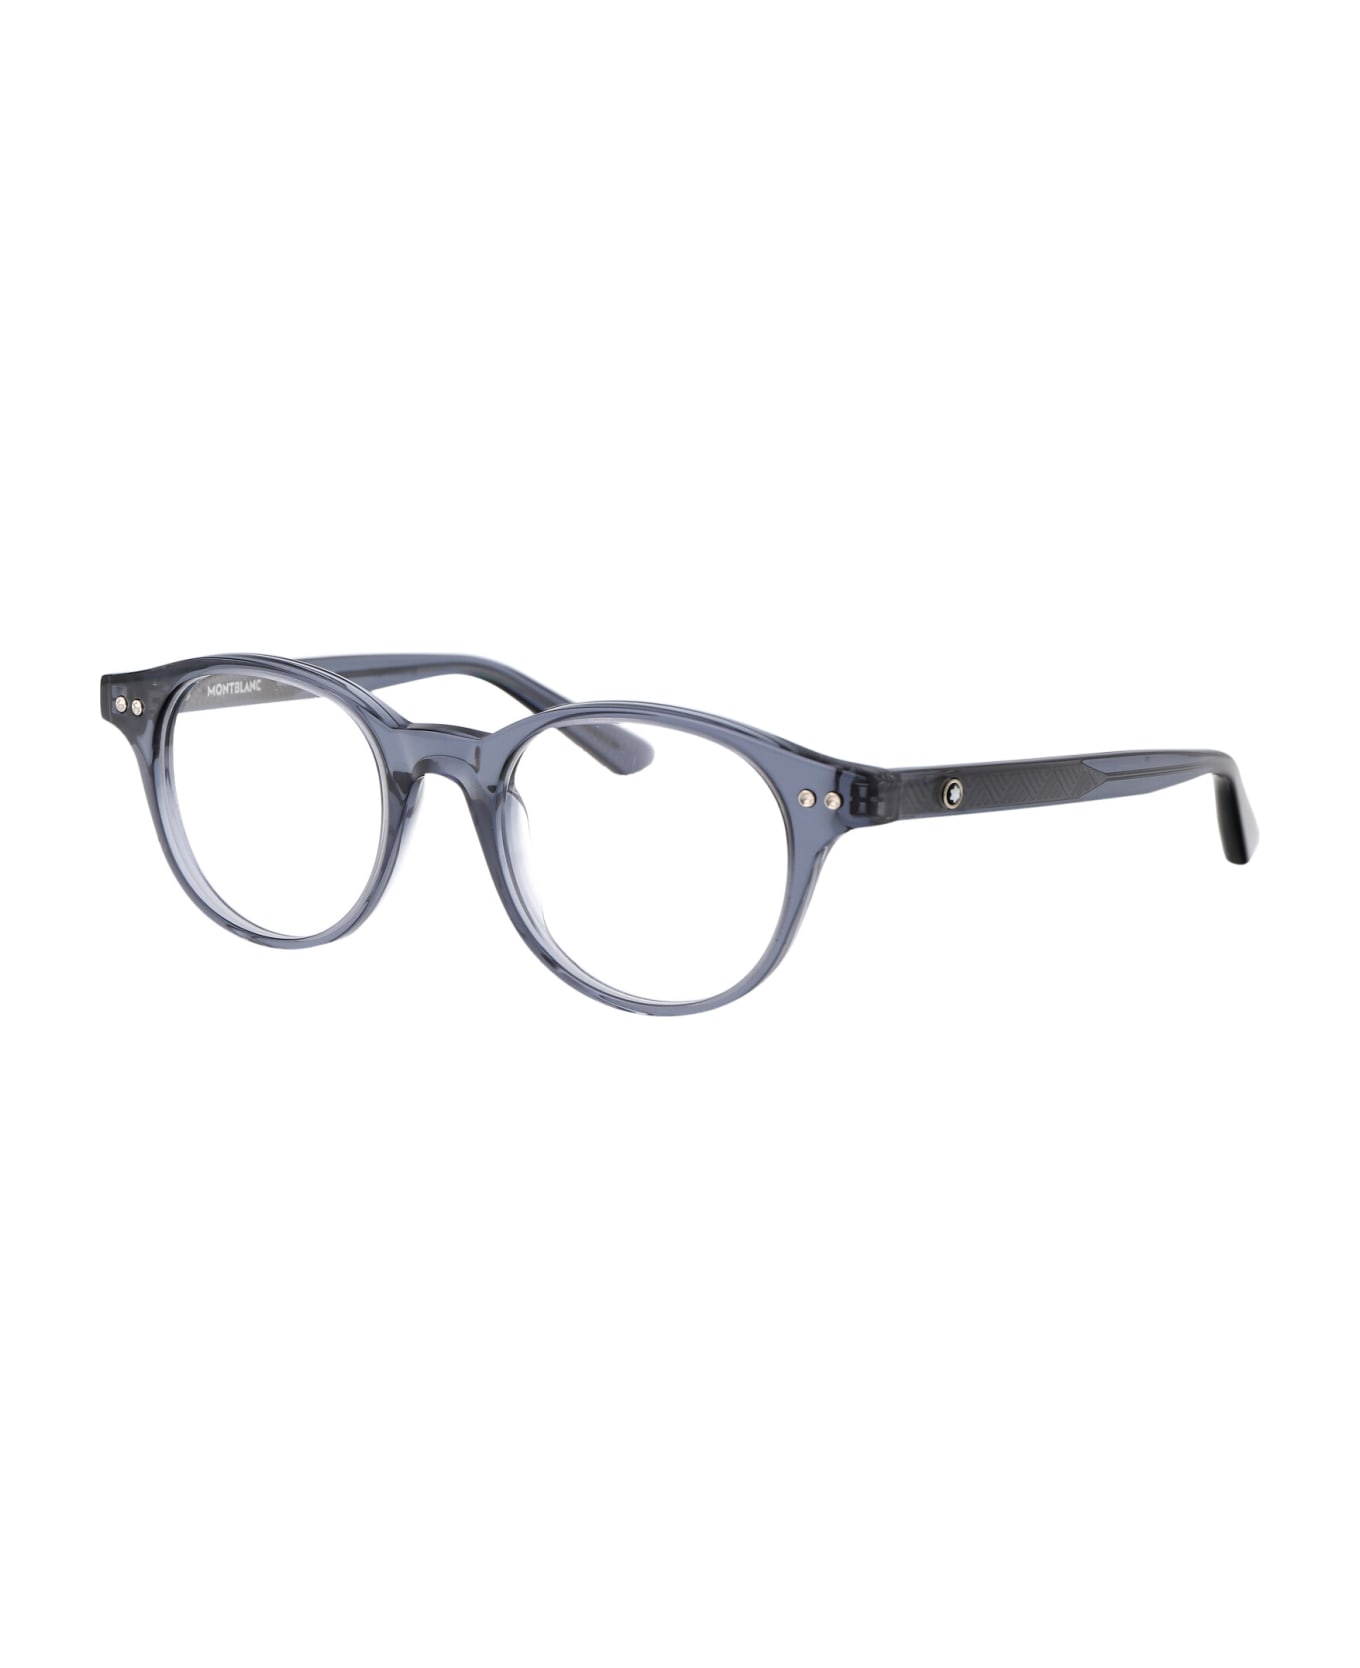 Montblanc Mb0255o Glasses - 003 BLUE BLUE TRANSPARENT